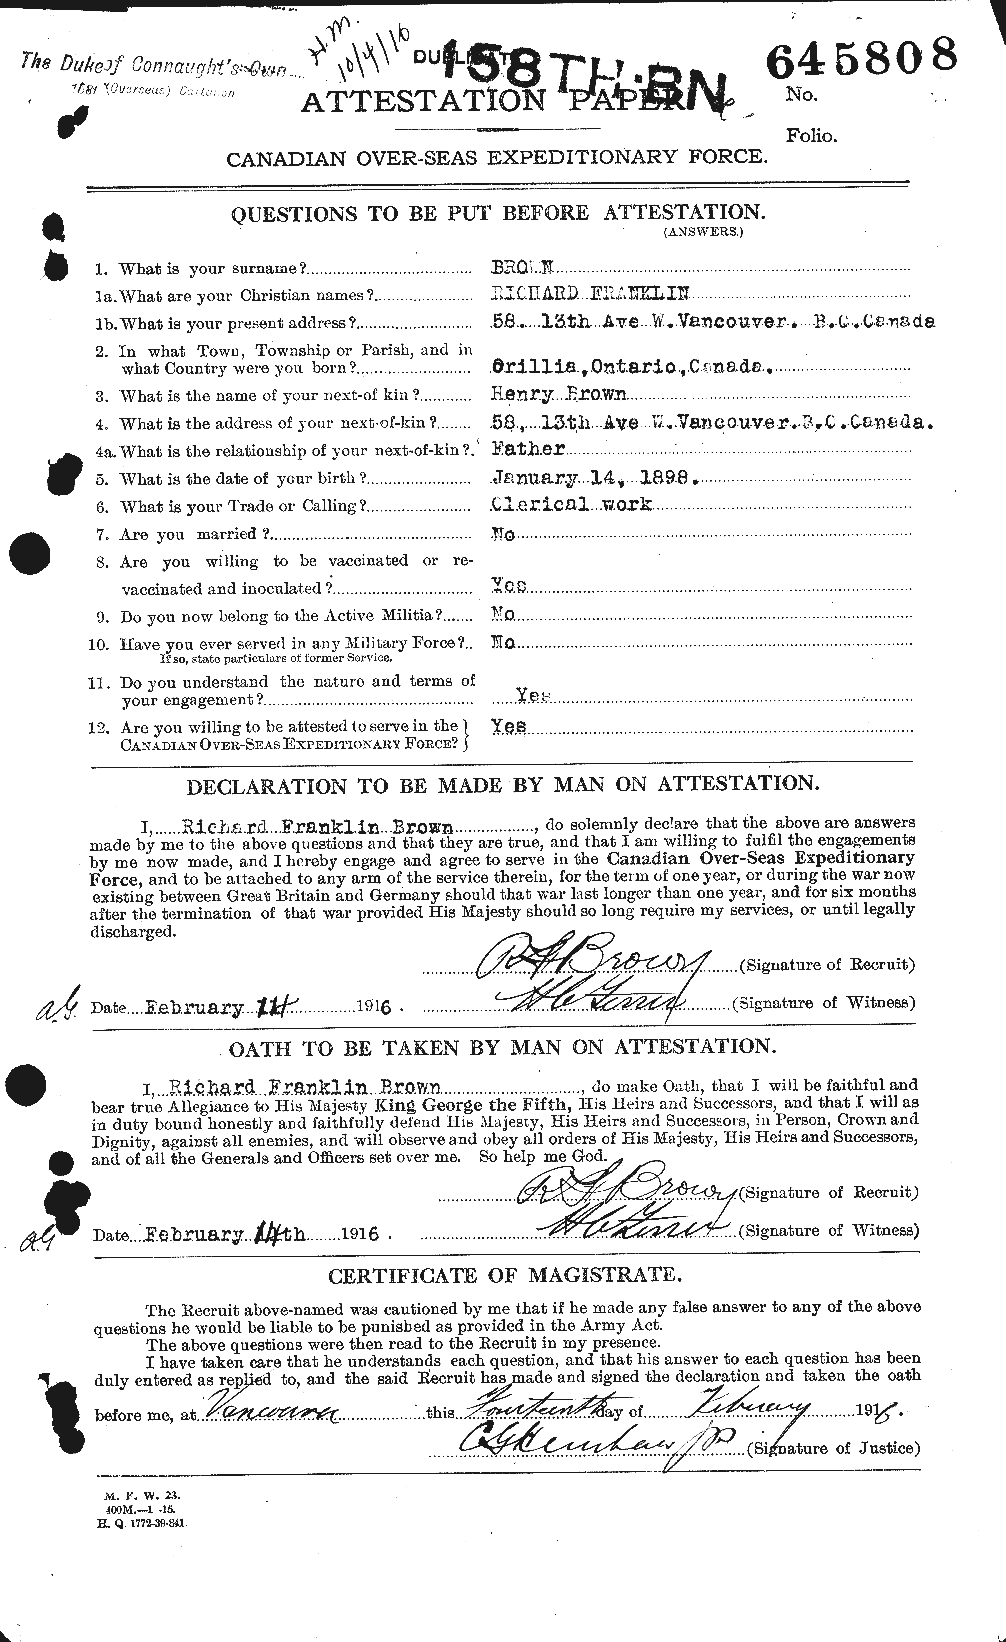 Dossiers du Personnel de la Première Guerre mondiale - CEC 267269a